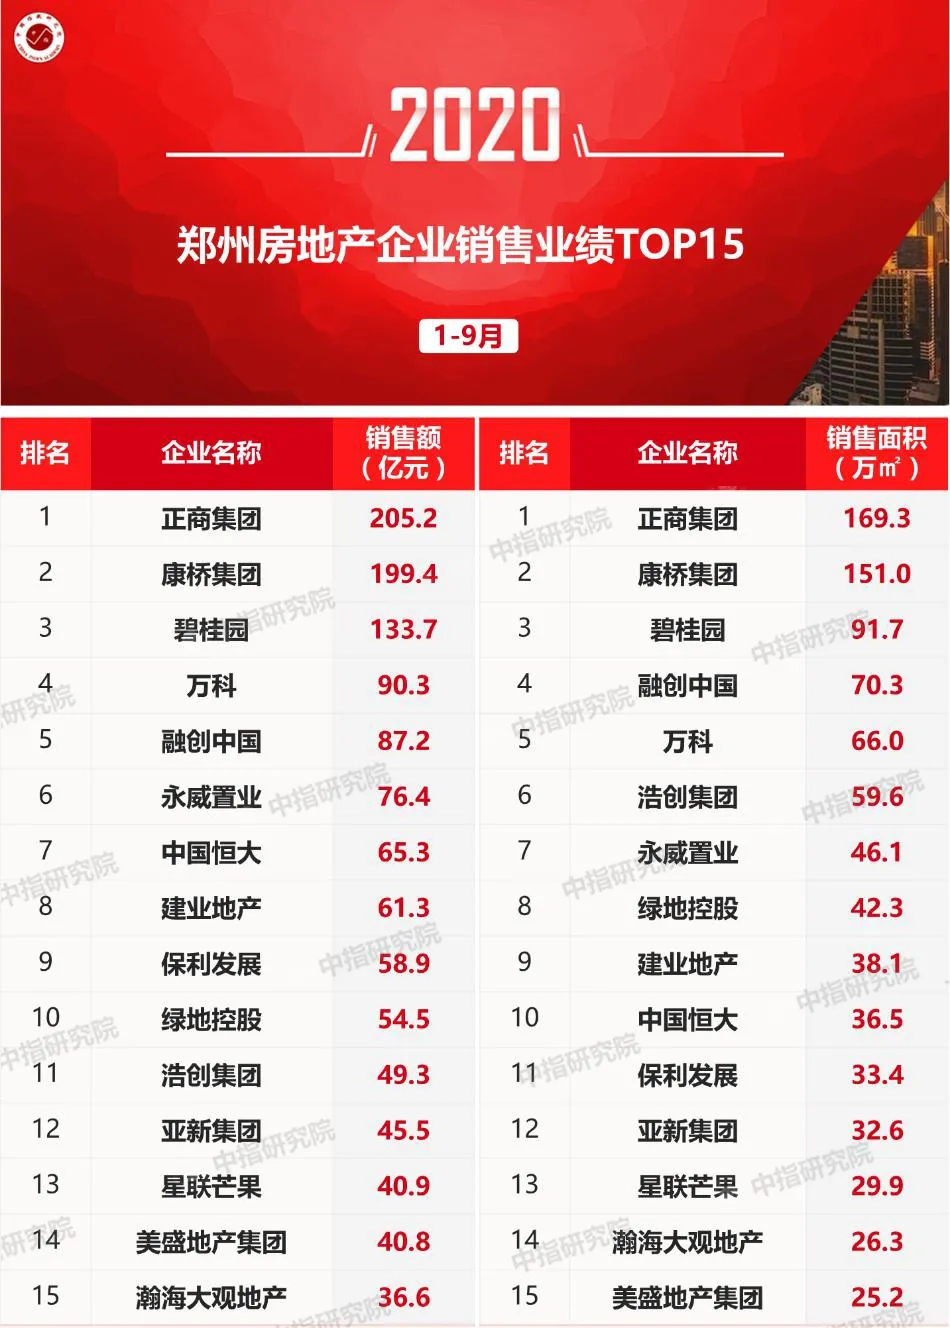 2020年1-9月郑州房地产企业销售业绩排行榜